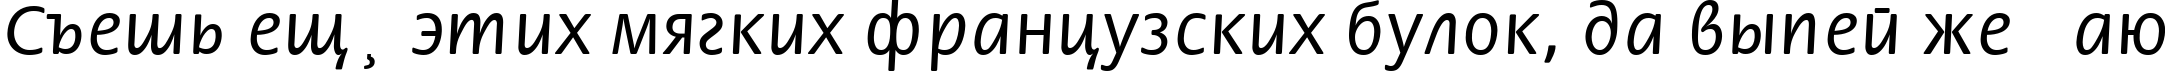 Пример написания шрифтом Flori текста на русском